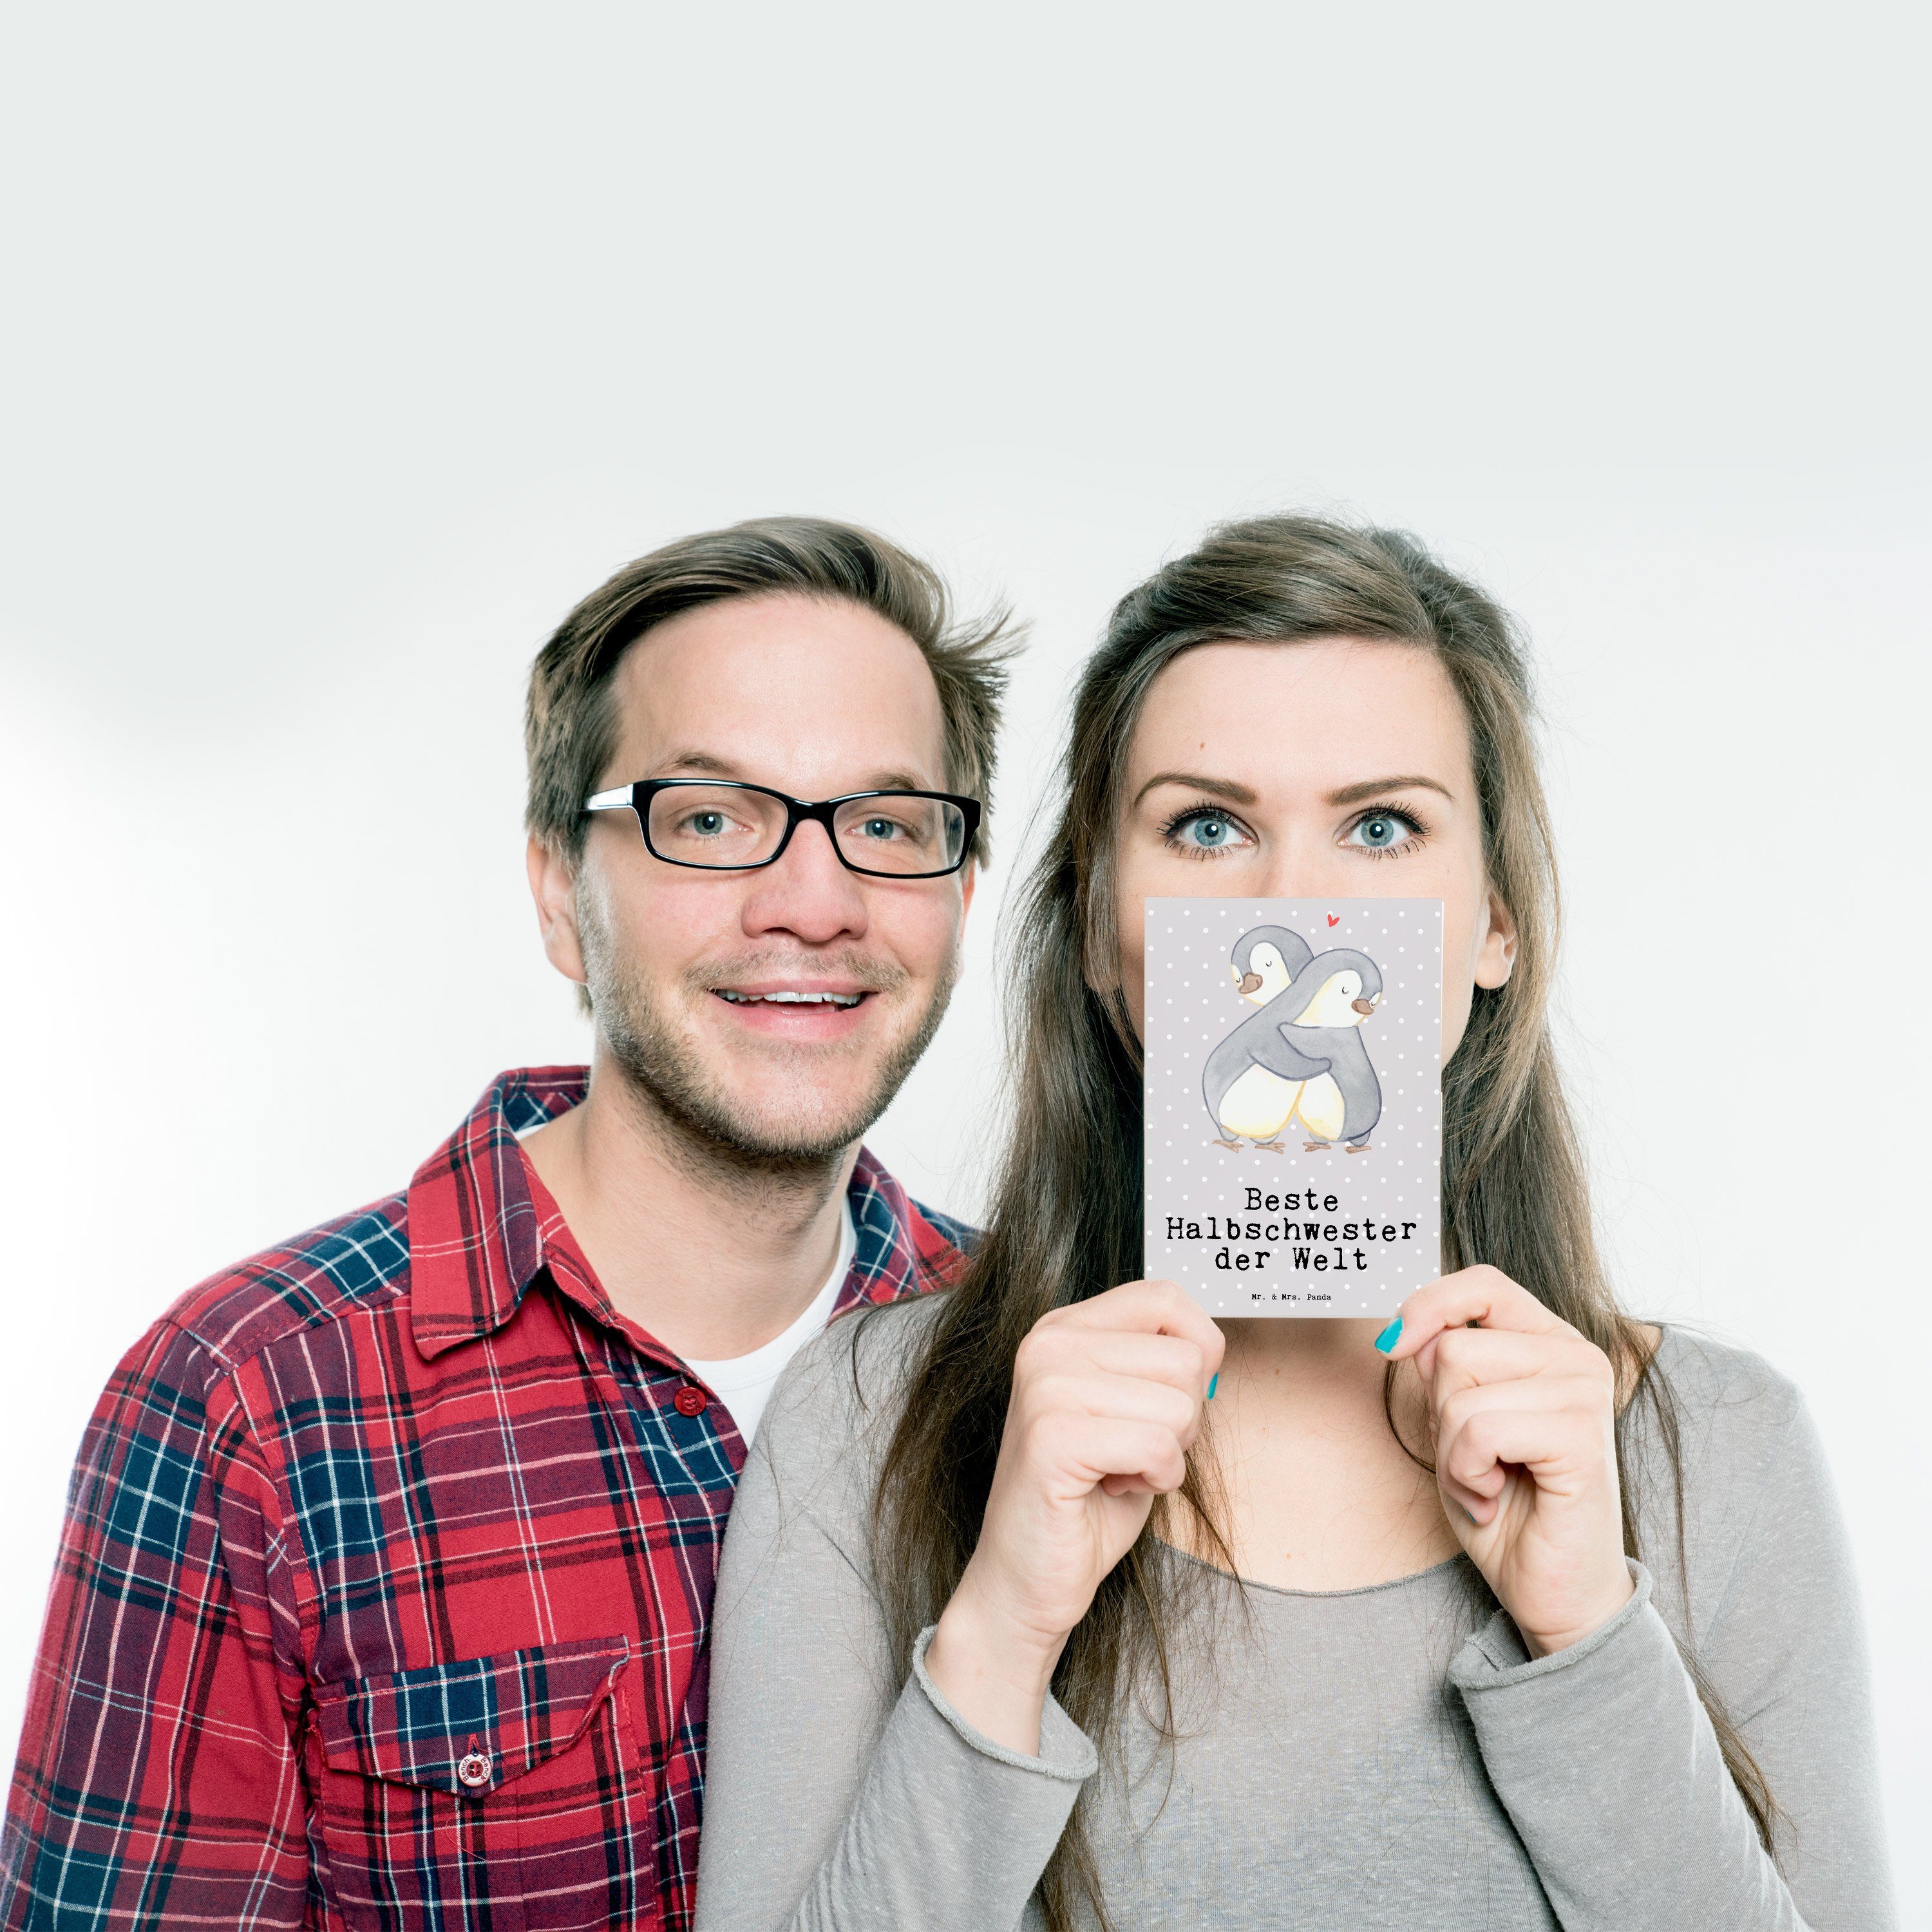 Beste Einla Geschenk, Welt Grau - Panda Mr. der Mrs. & Pinguin Postkarte - Halbschwester Pastell